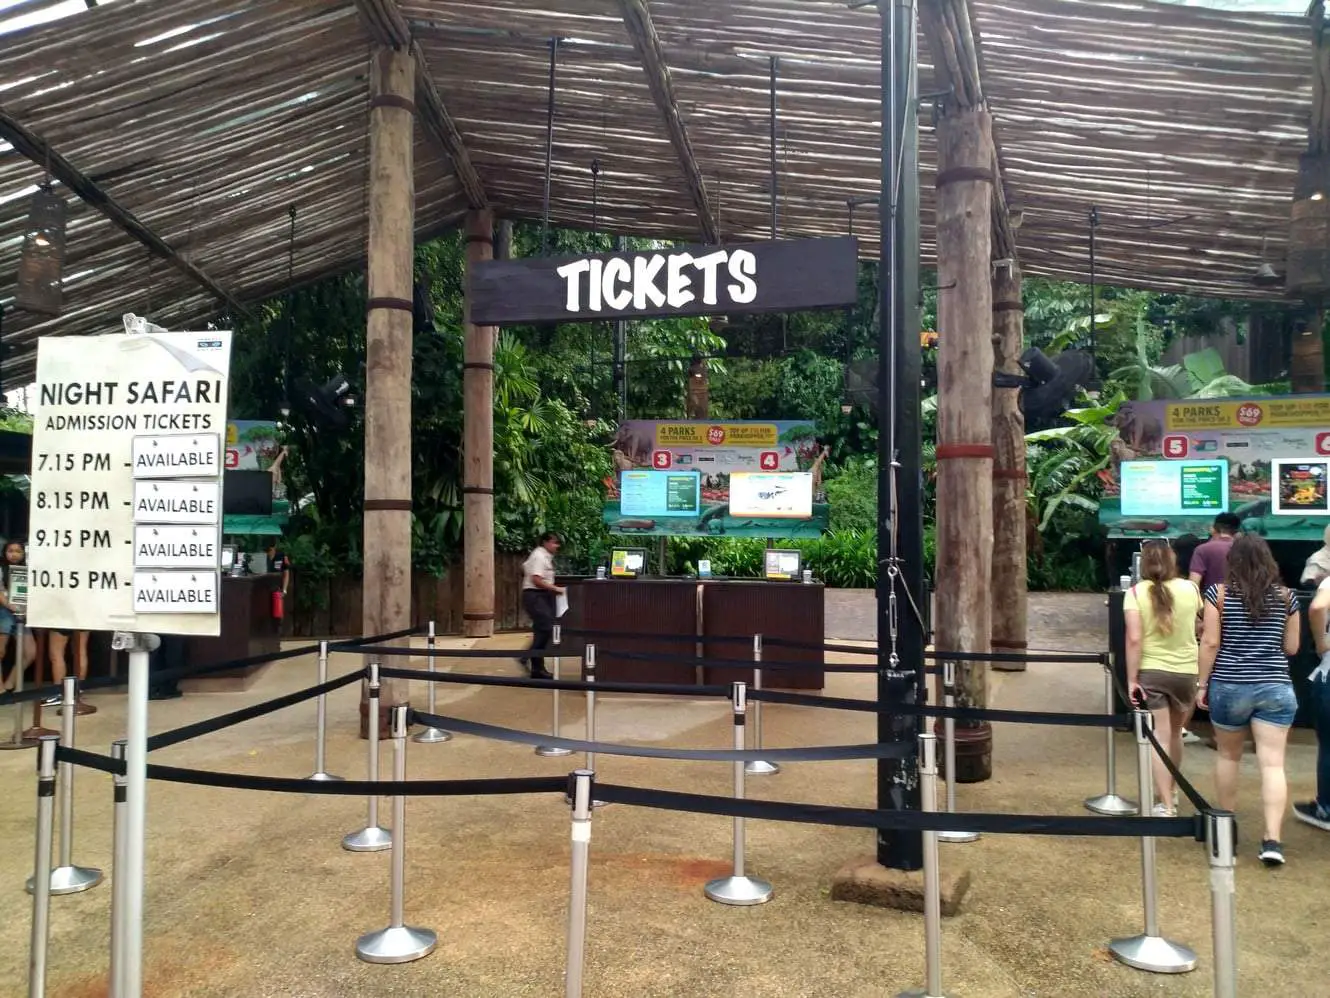 singapore zoo night safari tickets price